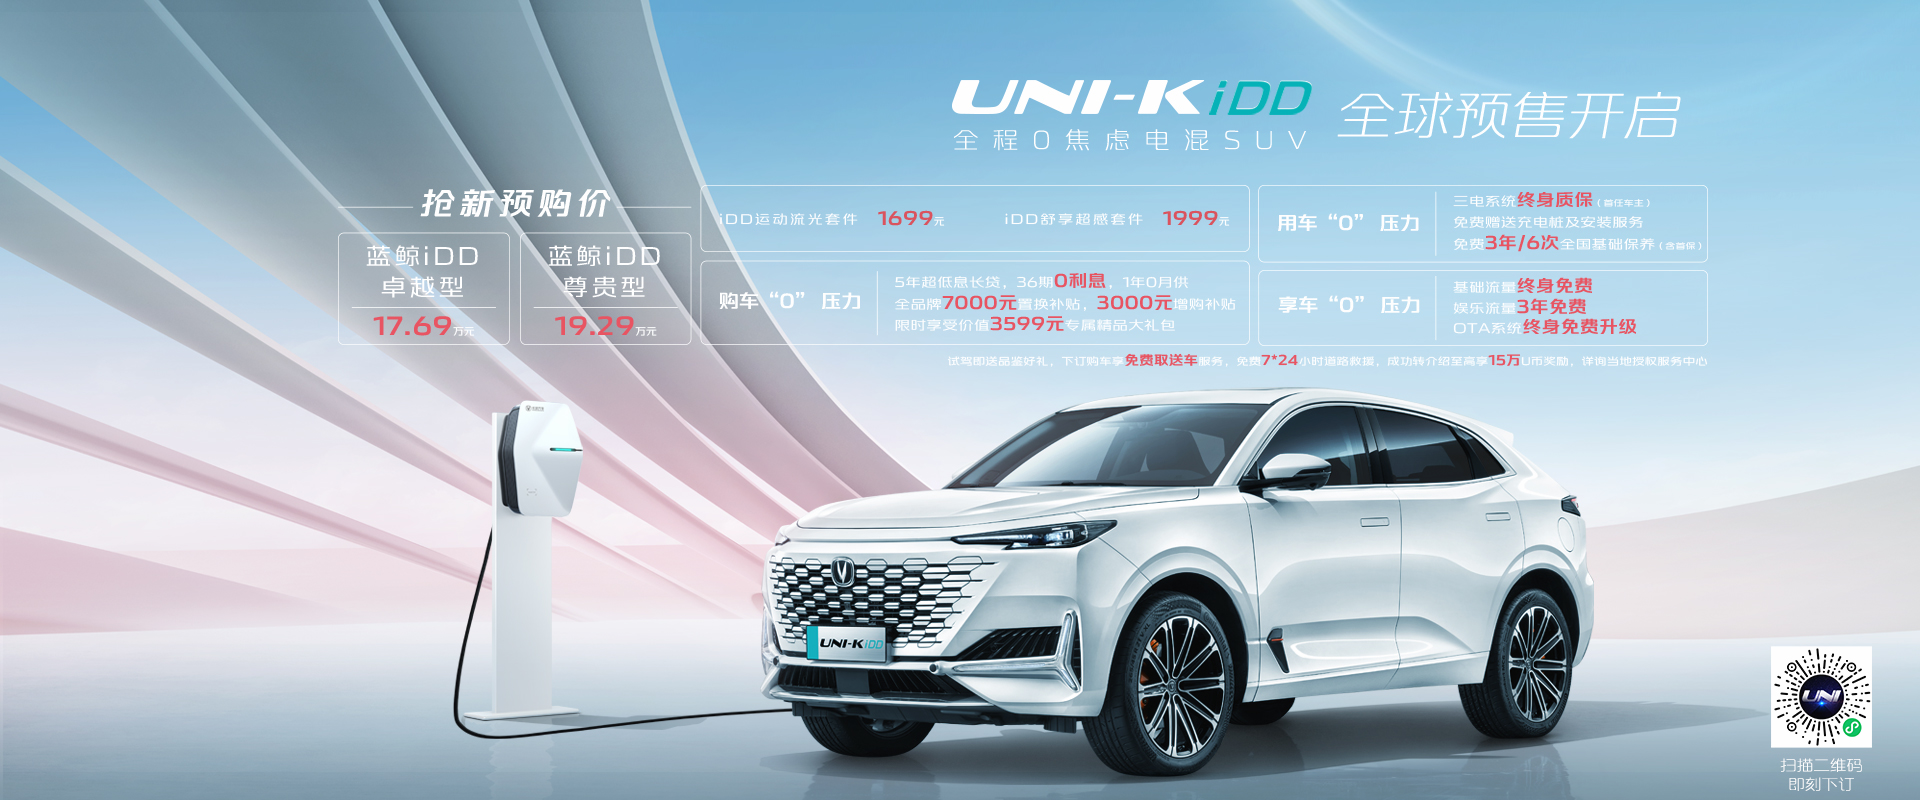 UNI-K iDD 车型上市